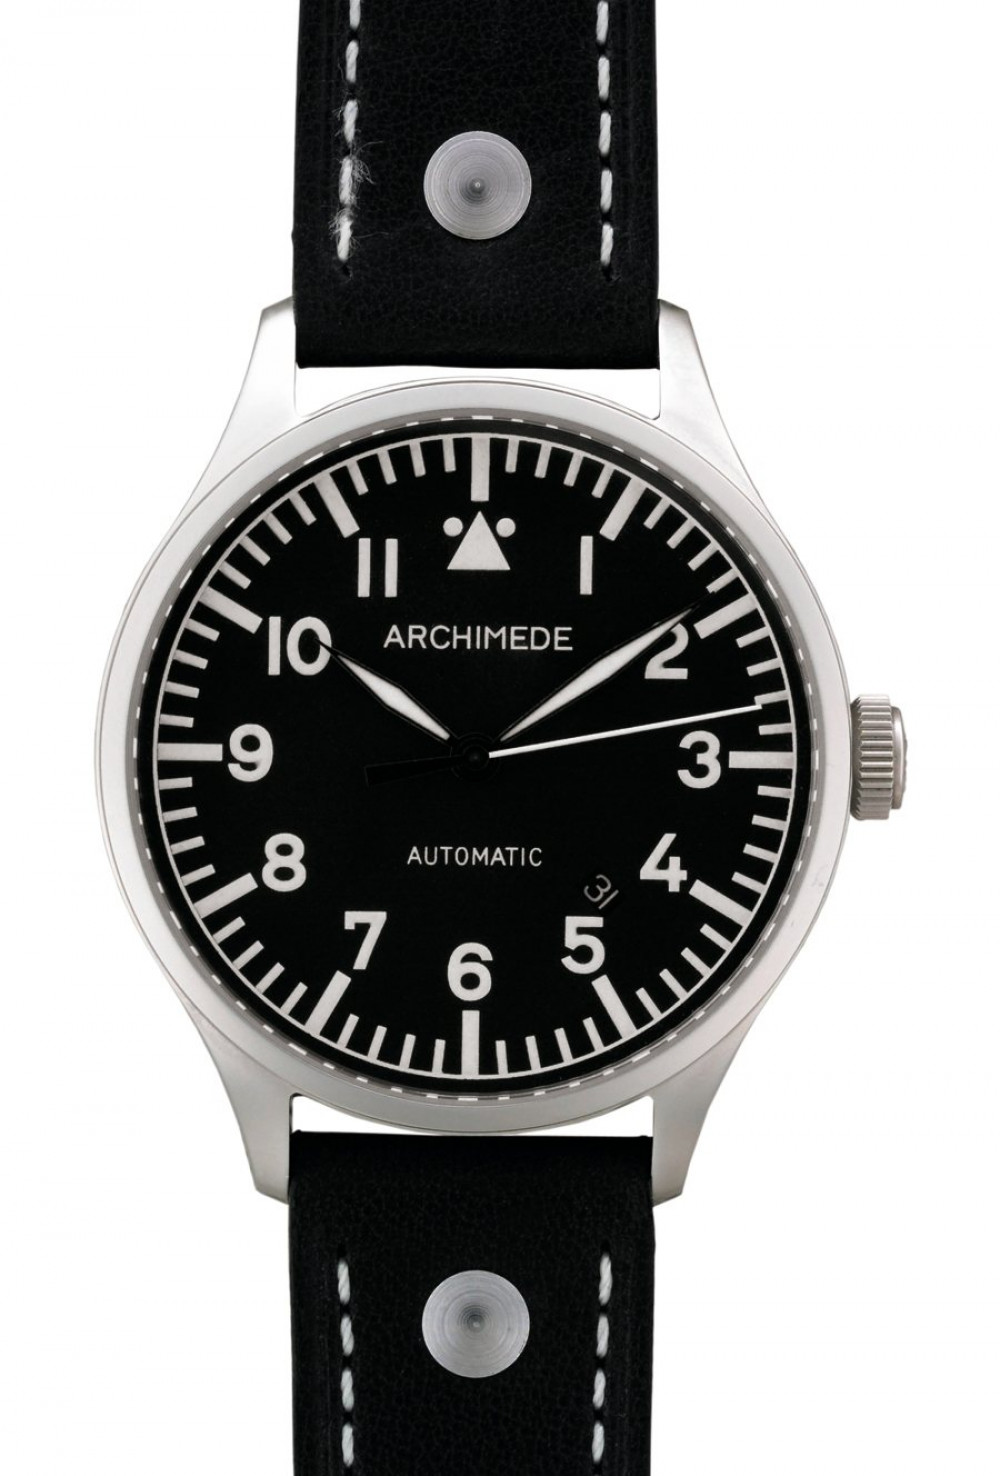 Zegarek firmy Archimede, model Pilot